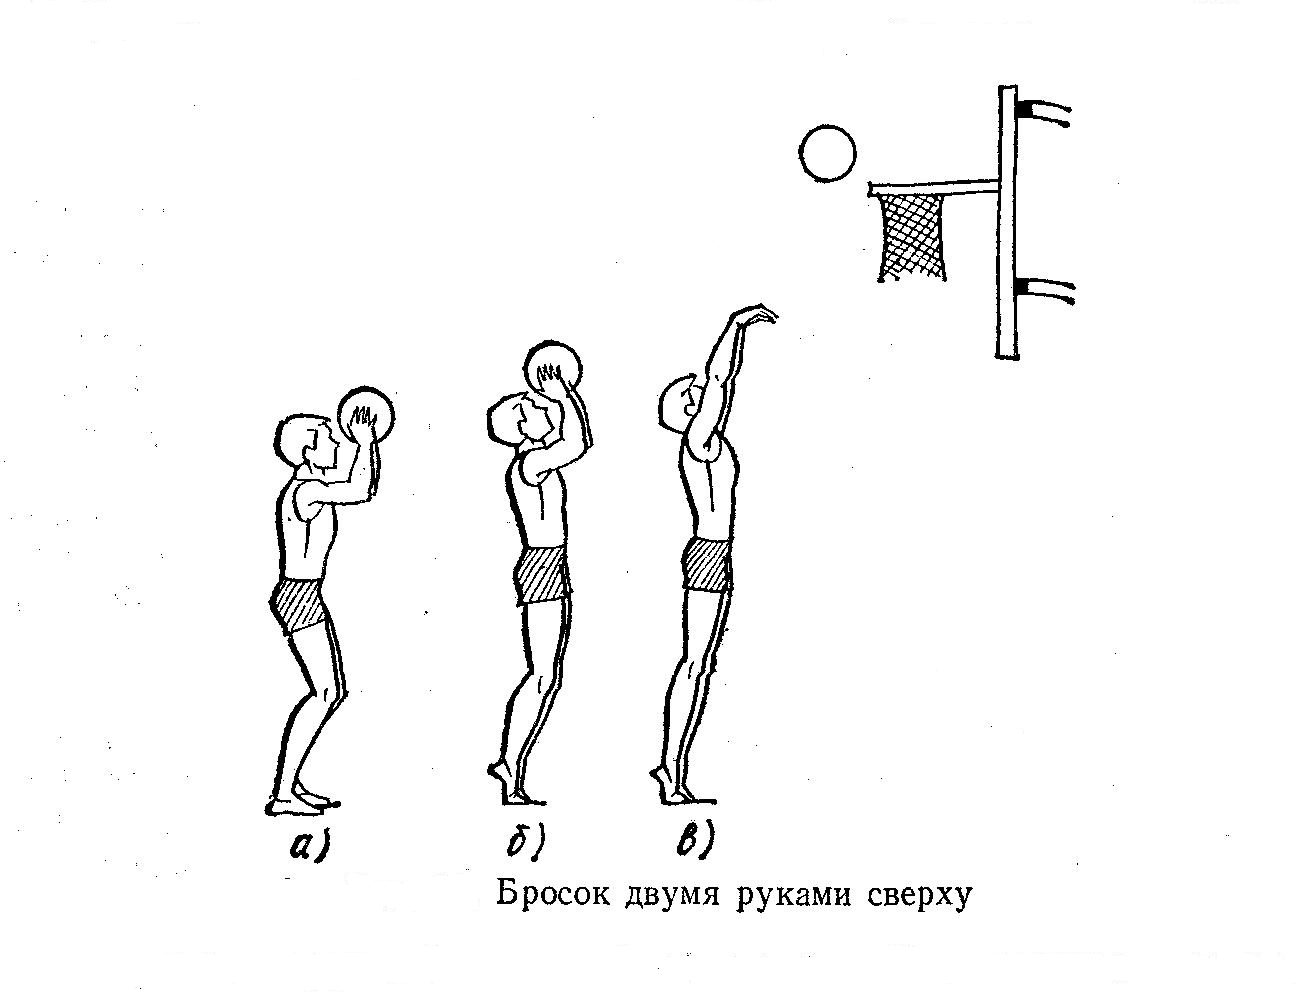 Техника сверху снизу. Бросок мяча методом снизу. Бросок мяча в баскетболе снизу. Техника броска мяча двумя руками сверху в баскетболе. Бросок двумя руками сверху в баскетболе.